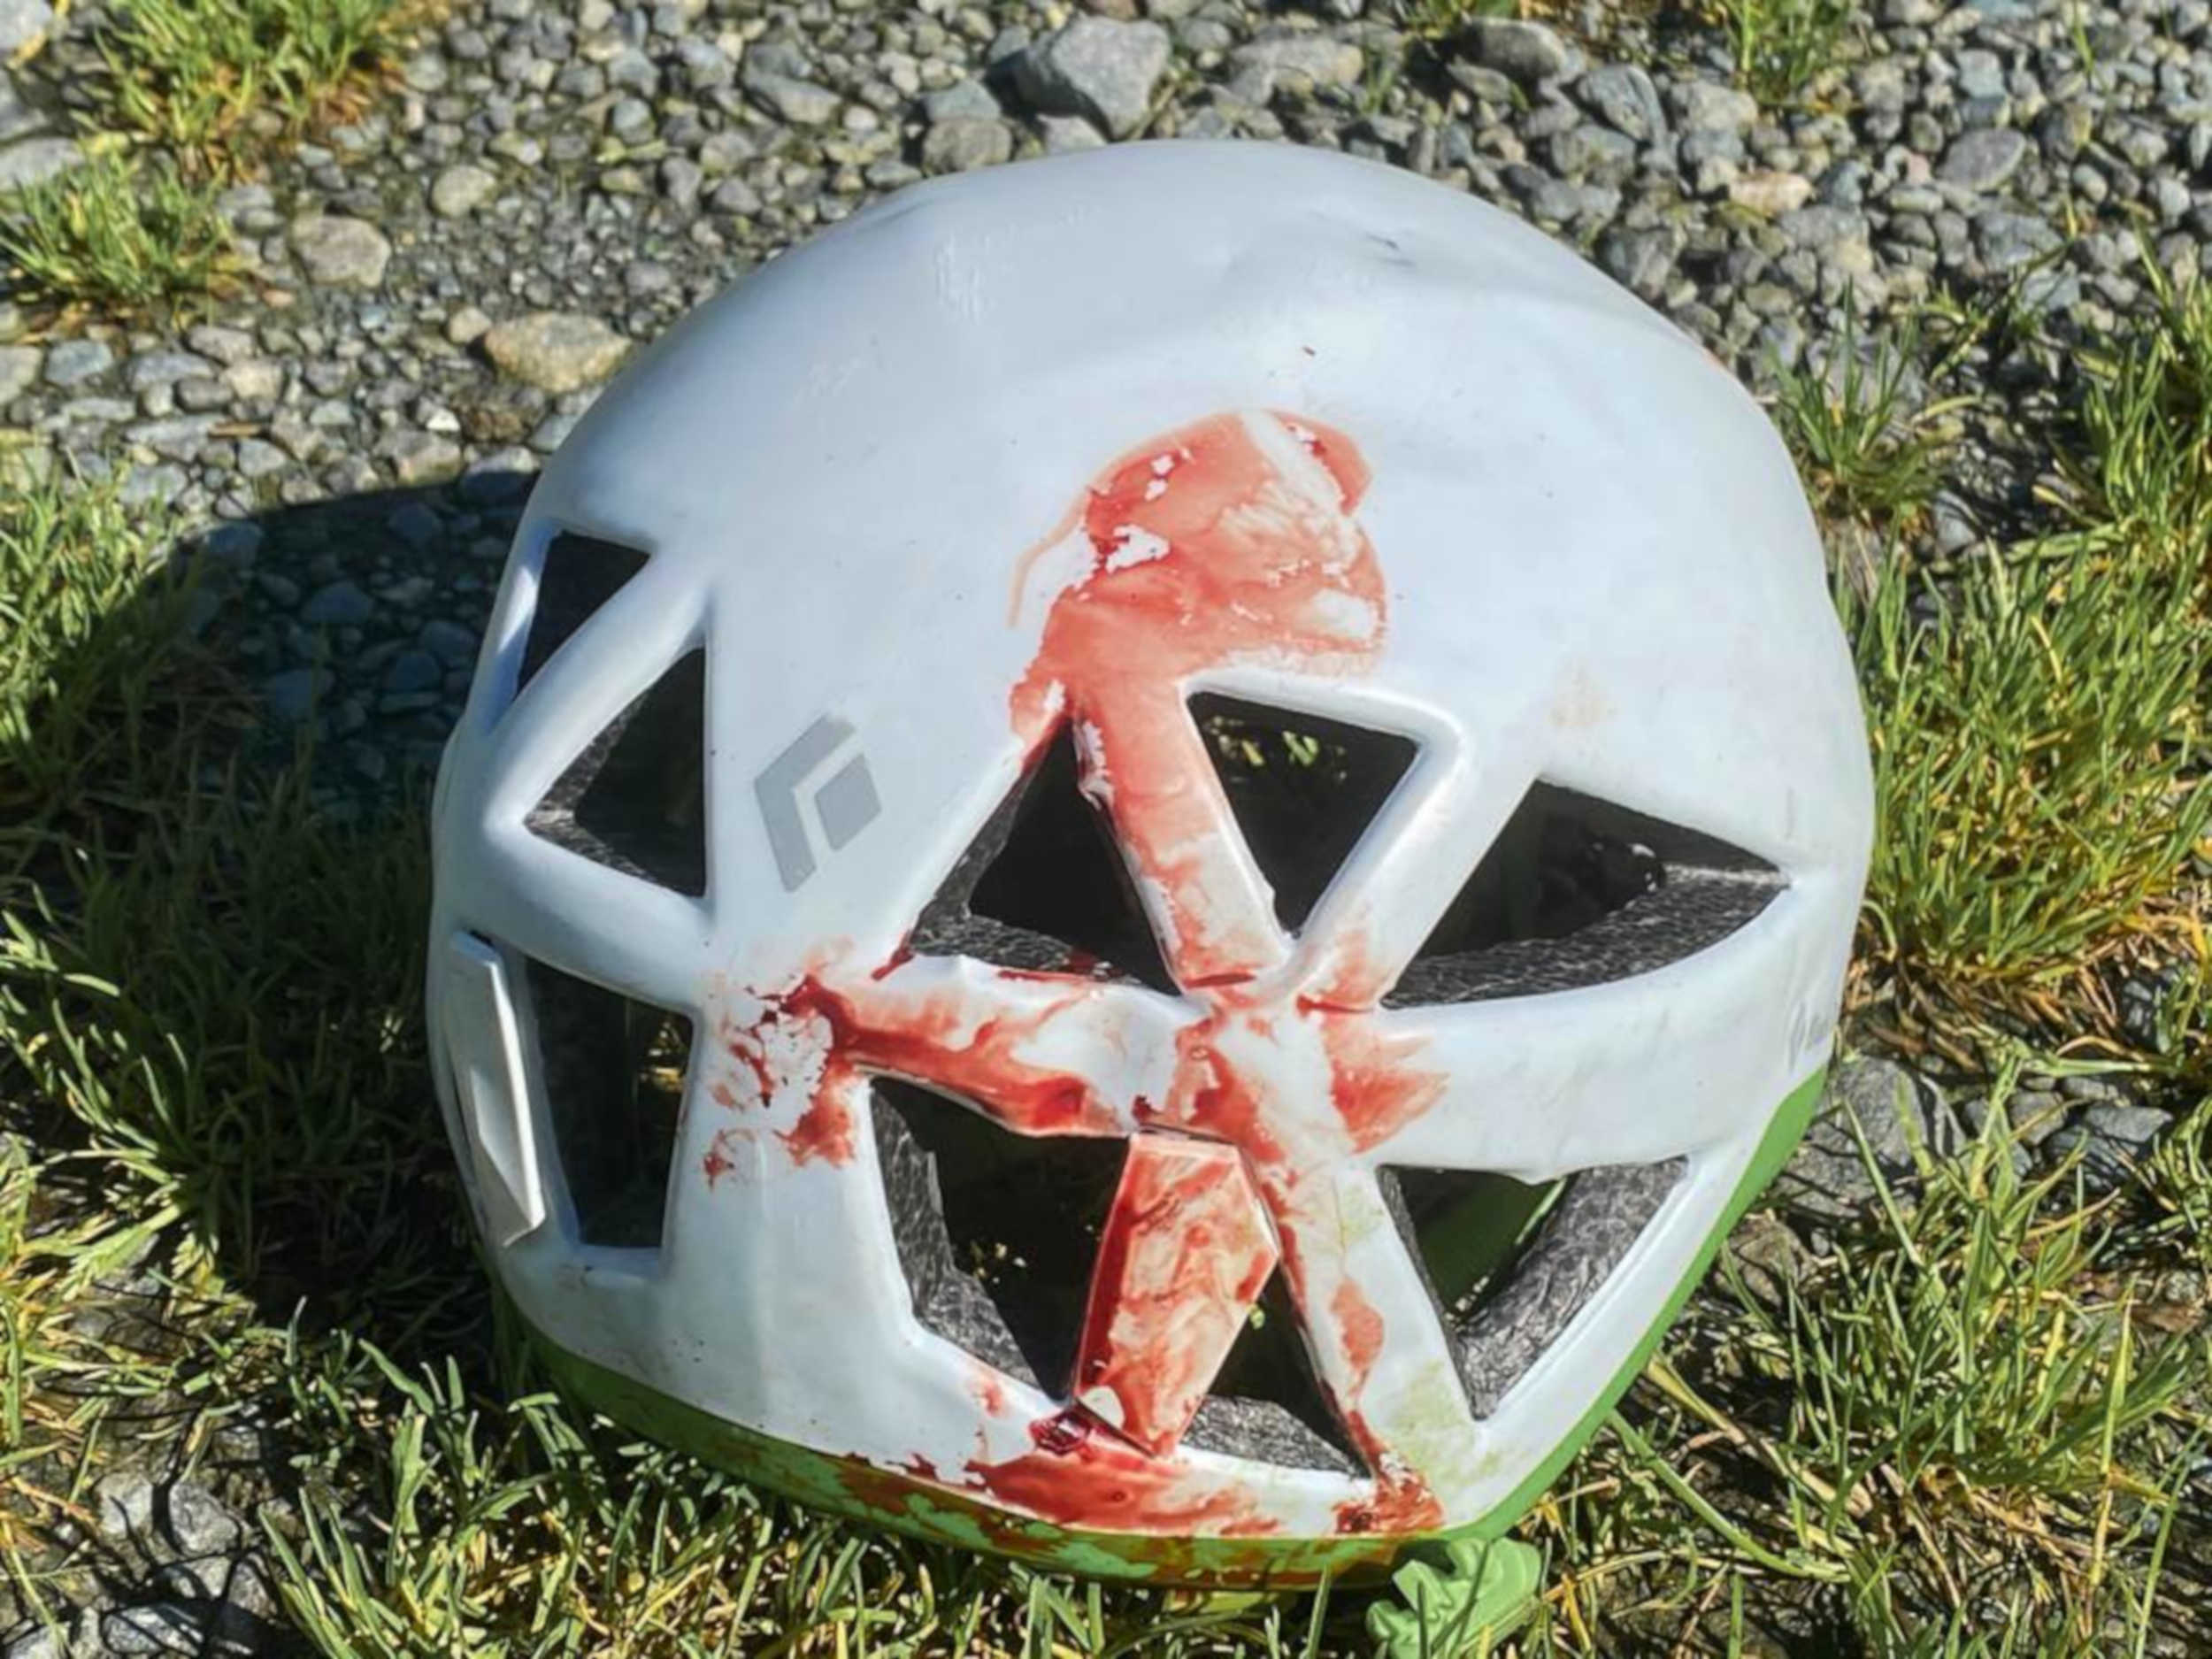 Bloody helmet